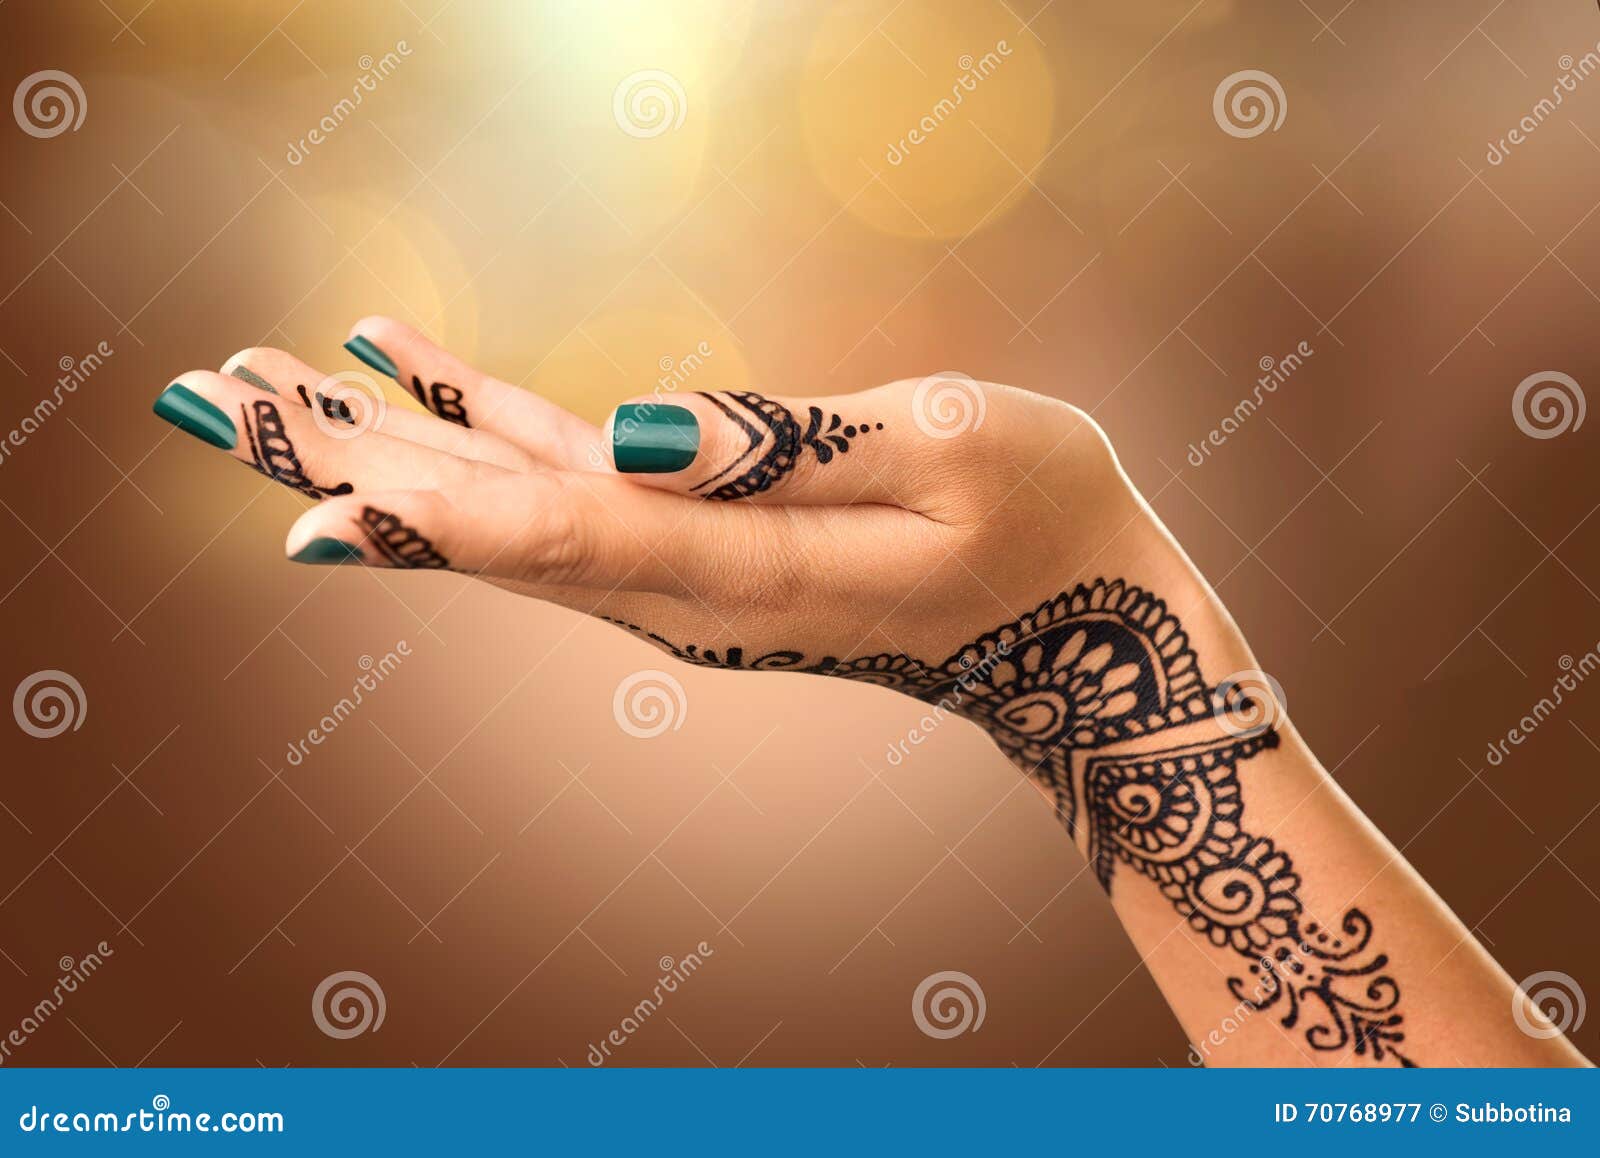 voorkoms Full Hand Mehndi Henna Tattoo Temporary Body Tattoo Waterproof For  Women - Price in India, Buy voorkoms Full Hand Mehndi Henna Tattoo  Temporary Body Tattoo Waterproof For Women Online In India,